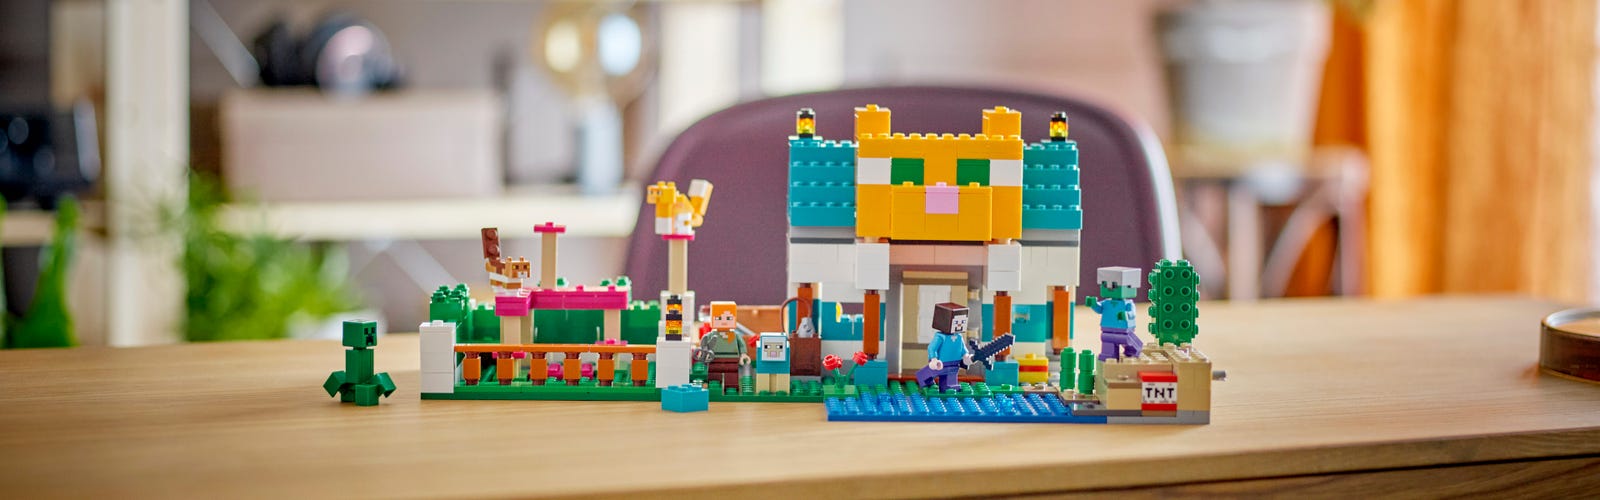 Les meilleures idées cadeaux LEGO à offrir à un enfant de 7 ans